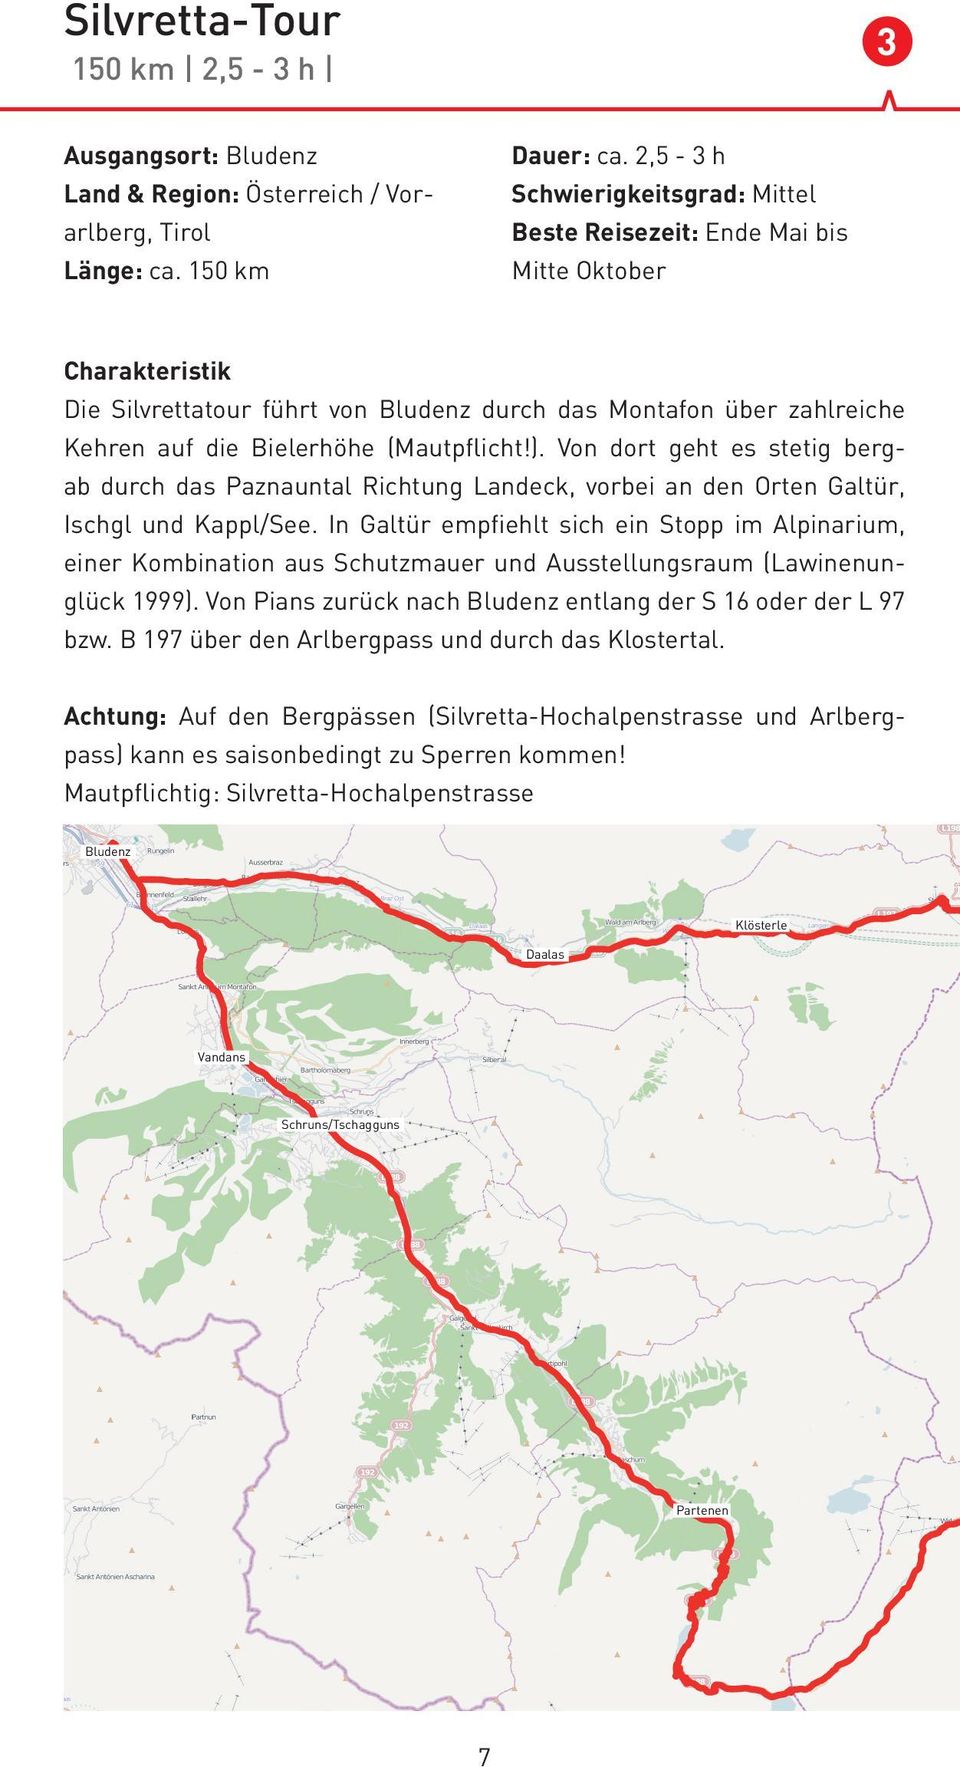 (Mautpflicht!). Von dort geht es stetig bergab durch das Paznauntal Richtung Landeck, vorbei an den Orten Galtür, Ischgl und Kappl/See.